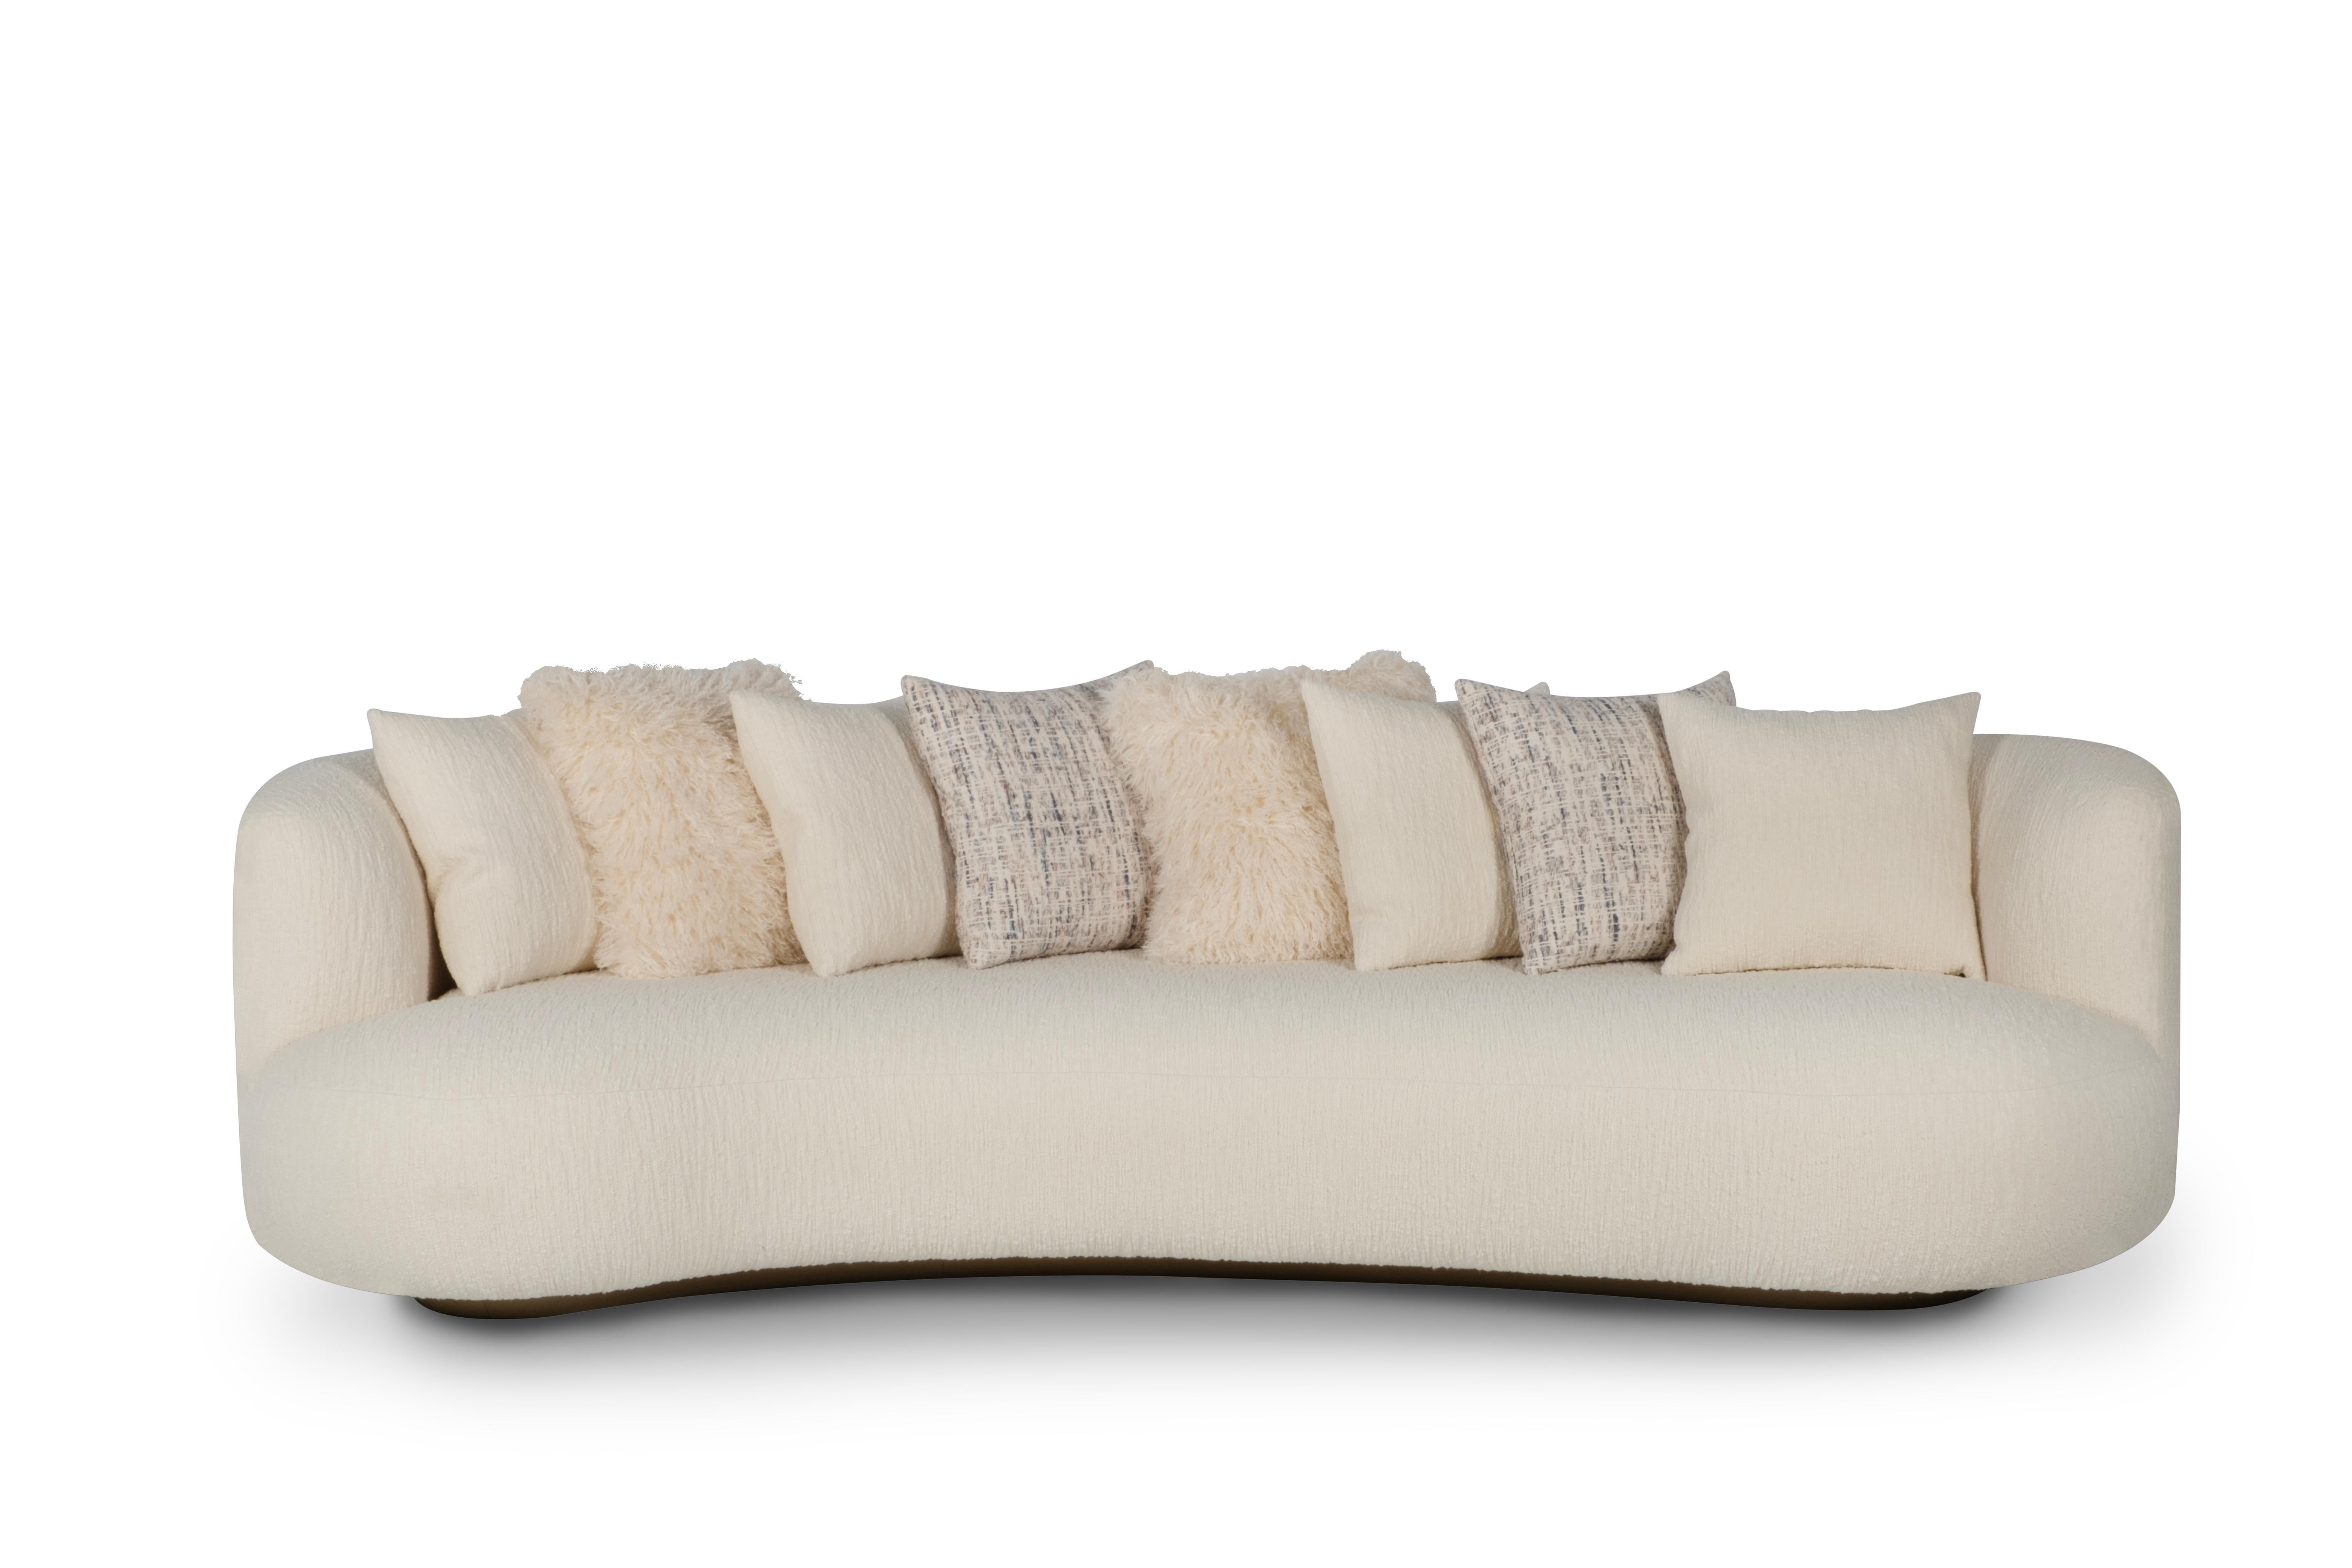 Twins Sofa, Collection'S Contemporary, handgefertigt in Portugal - Europa von Greenapple.

Die von Rute Martins für die Collection'S Contemporary entworfene geschwungene Couch und das Tagesbett Twins haben die gleichen Gene, aber jedes besitzt ein